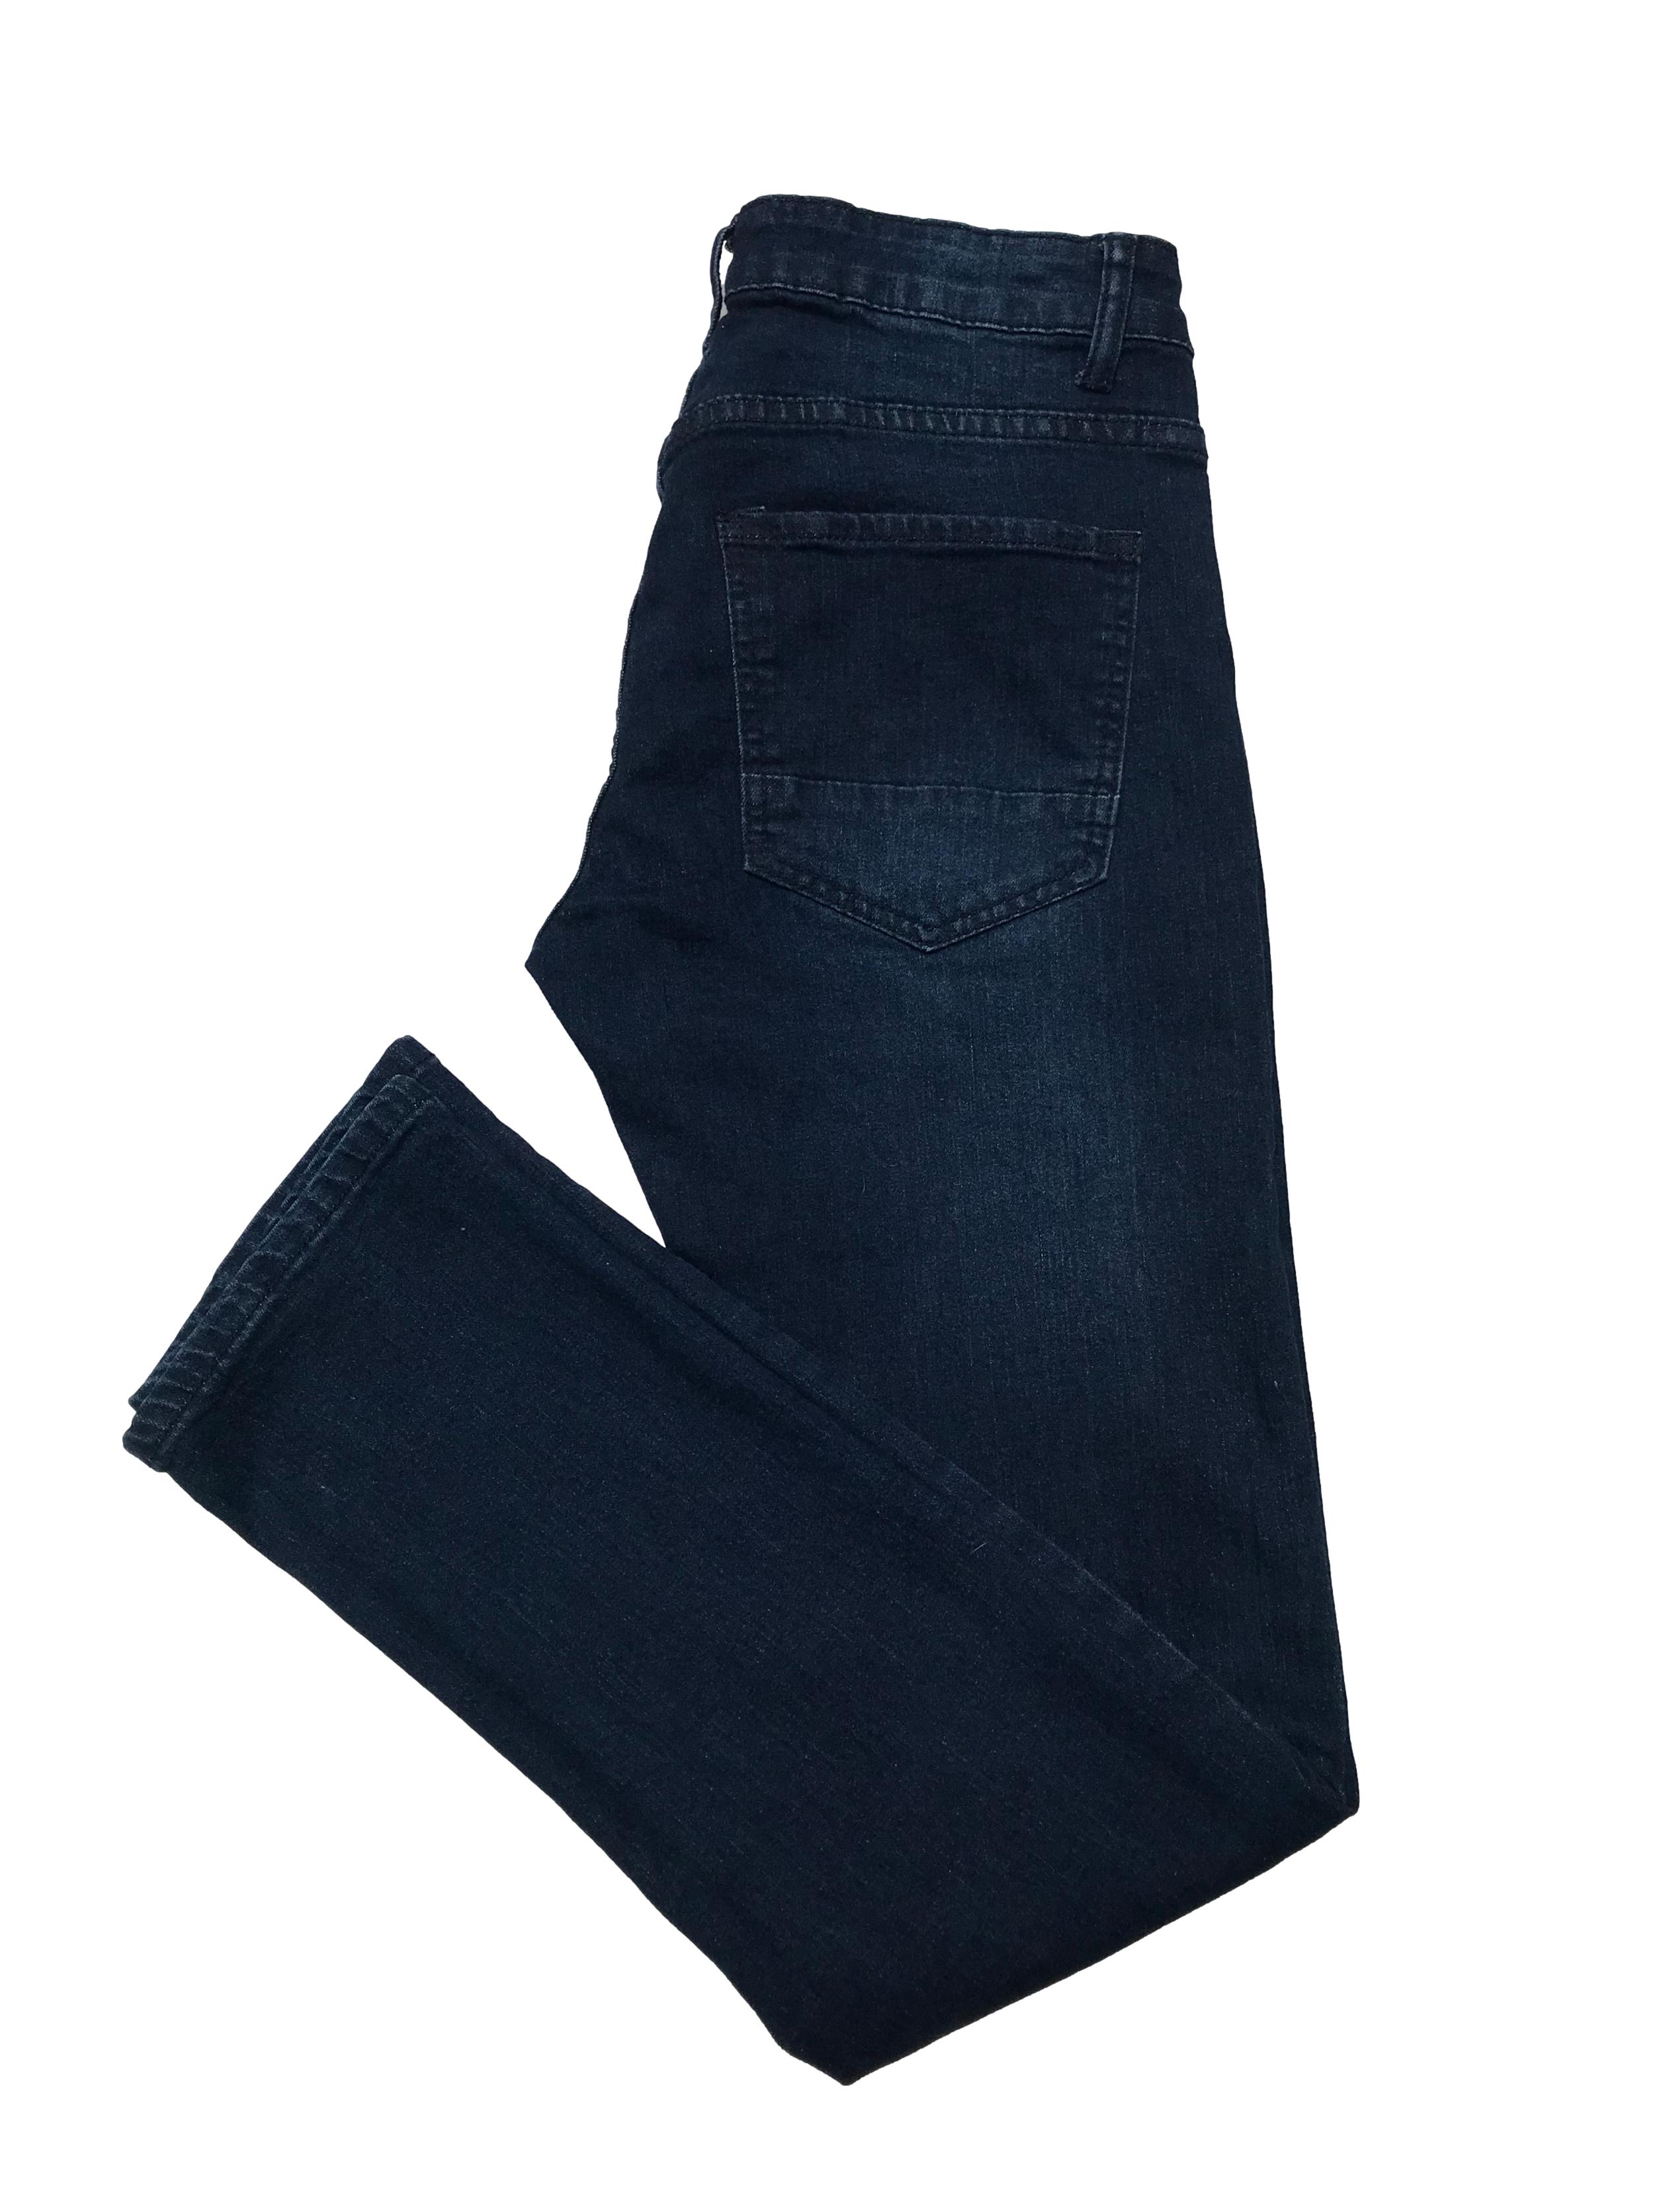 Jean Paper denim&Cloth azul oscuro focalizado, 70% algodón stretch, corte slim y tiro medio. Cintura 78cm Largo 98cm. Precio original $139